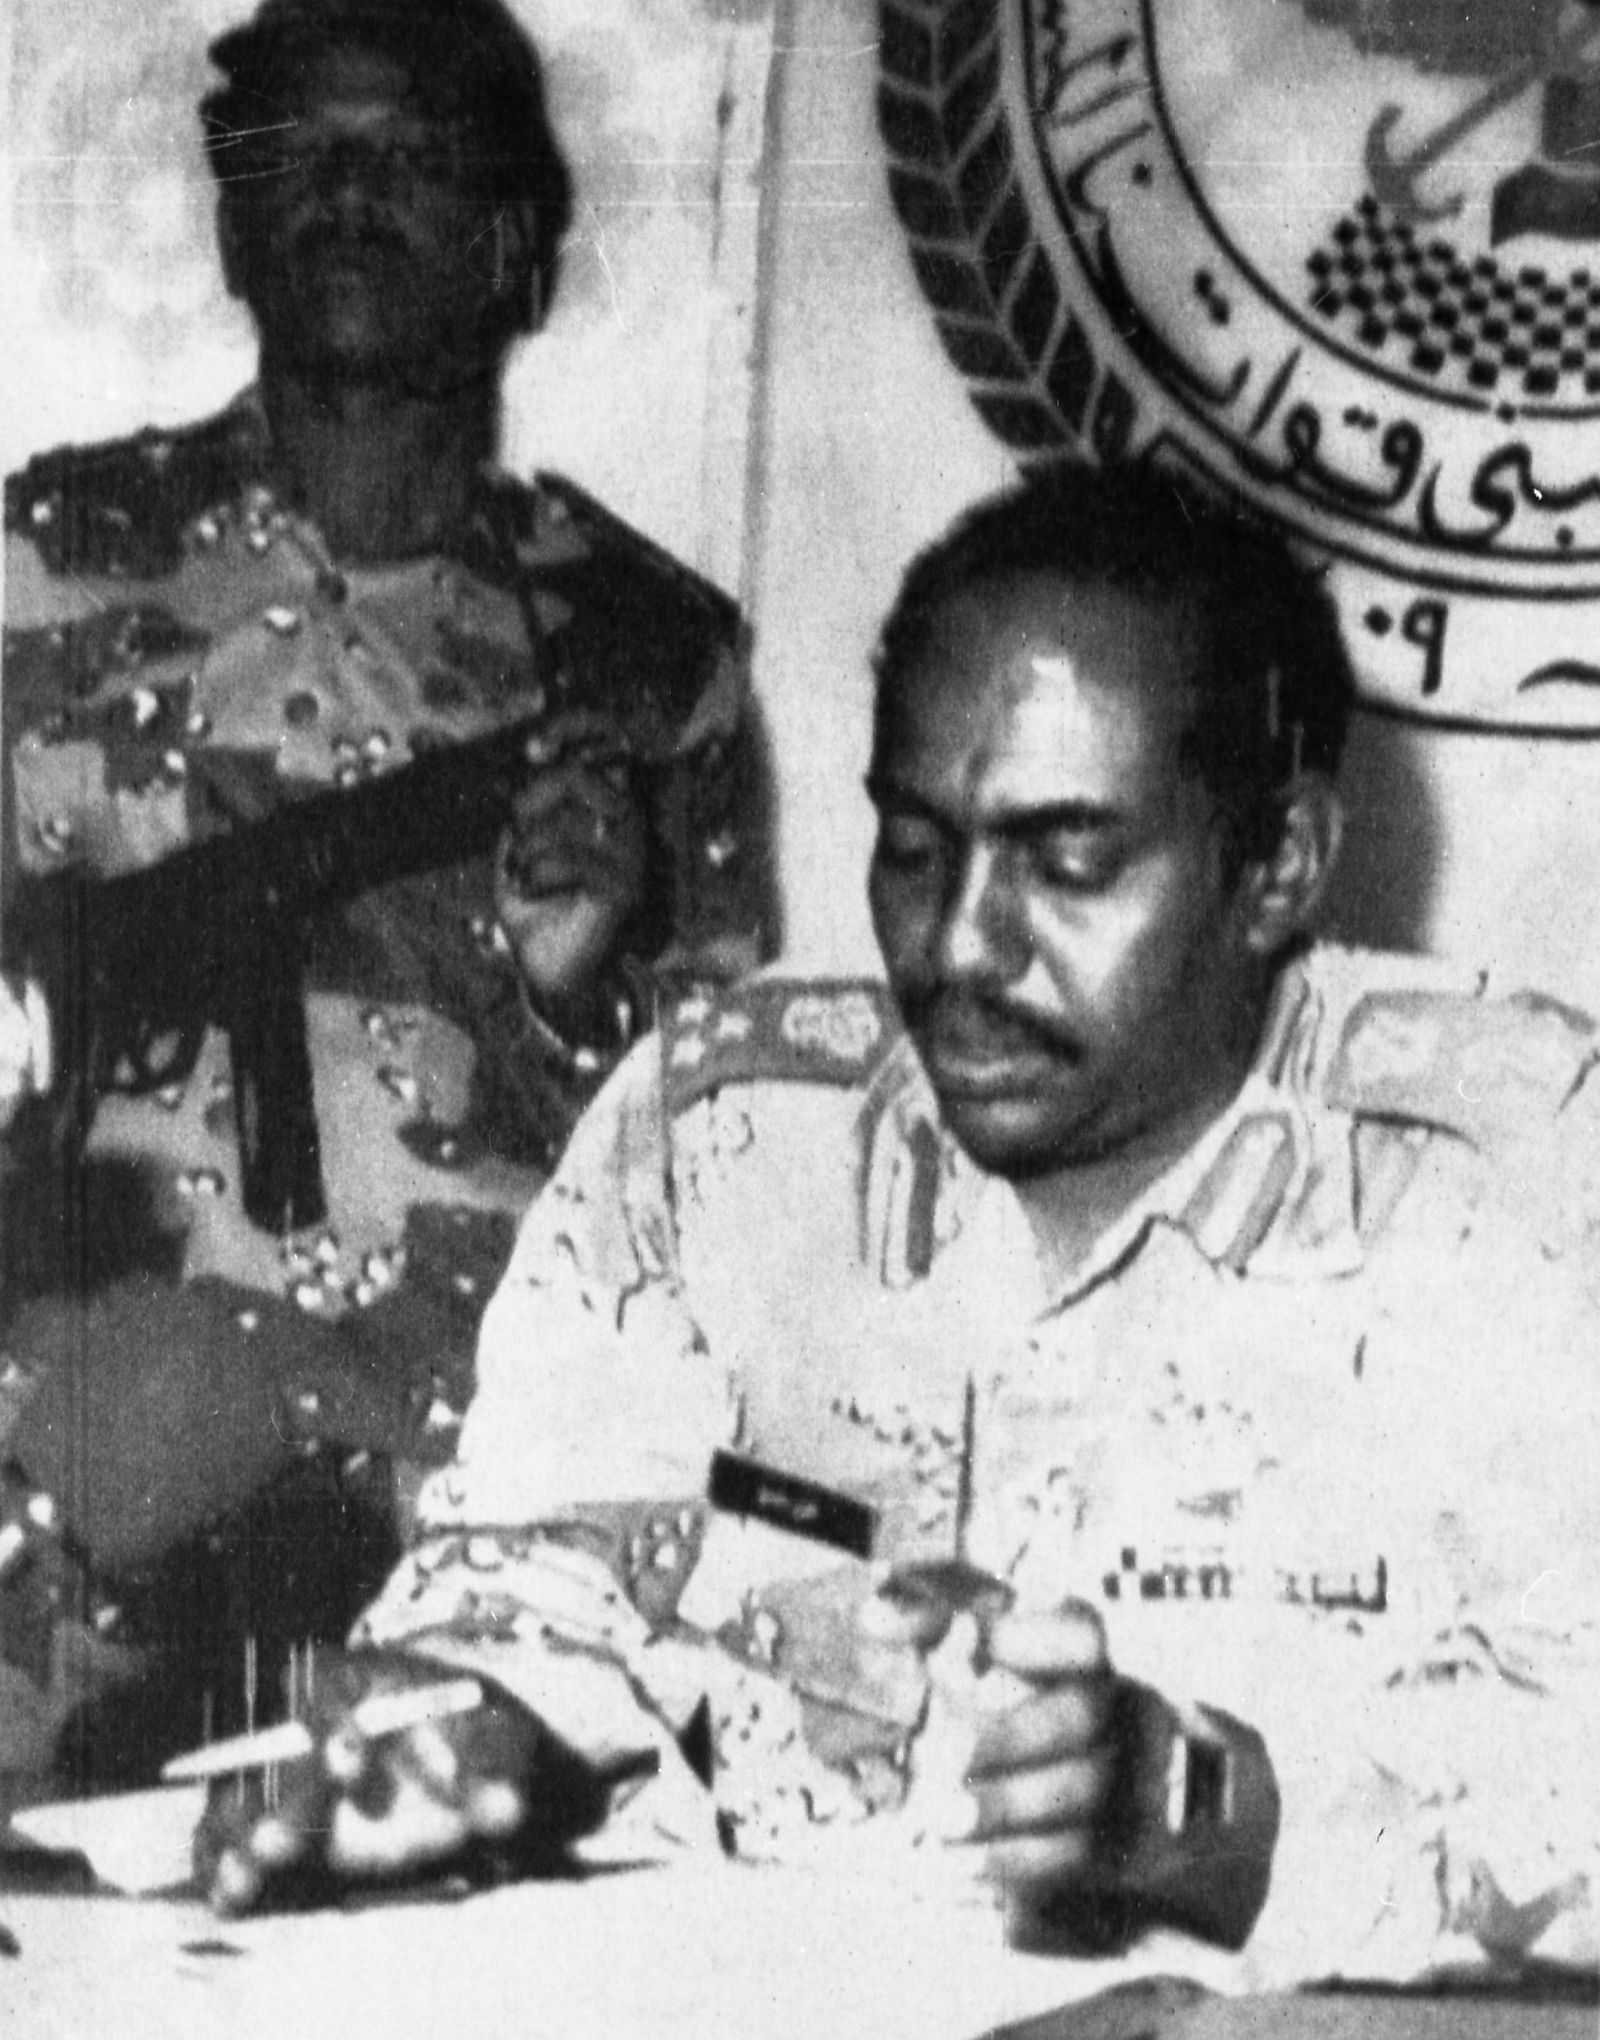 زعيم الانقلاب في السودان آنذاك الفريق عمر حسن البشير يتحدث في مؤتمر صحفي، 1 يوليو 1989  - Reuters